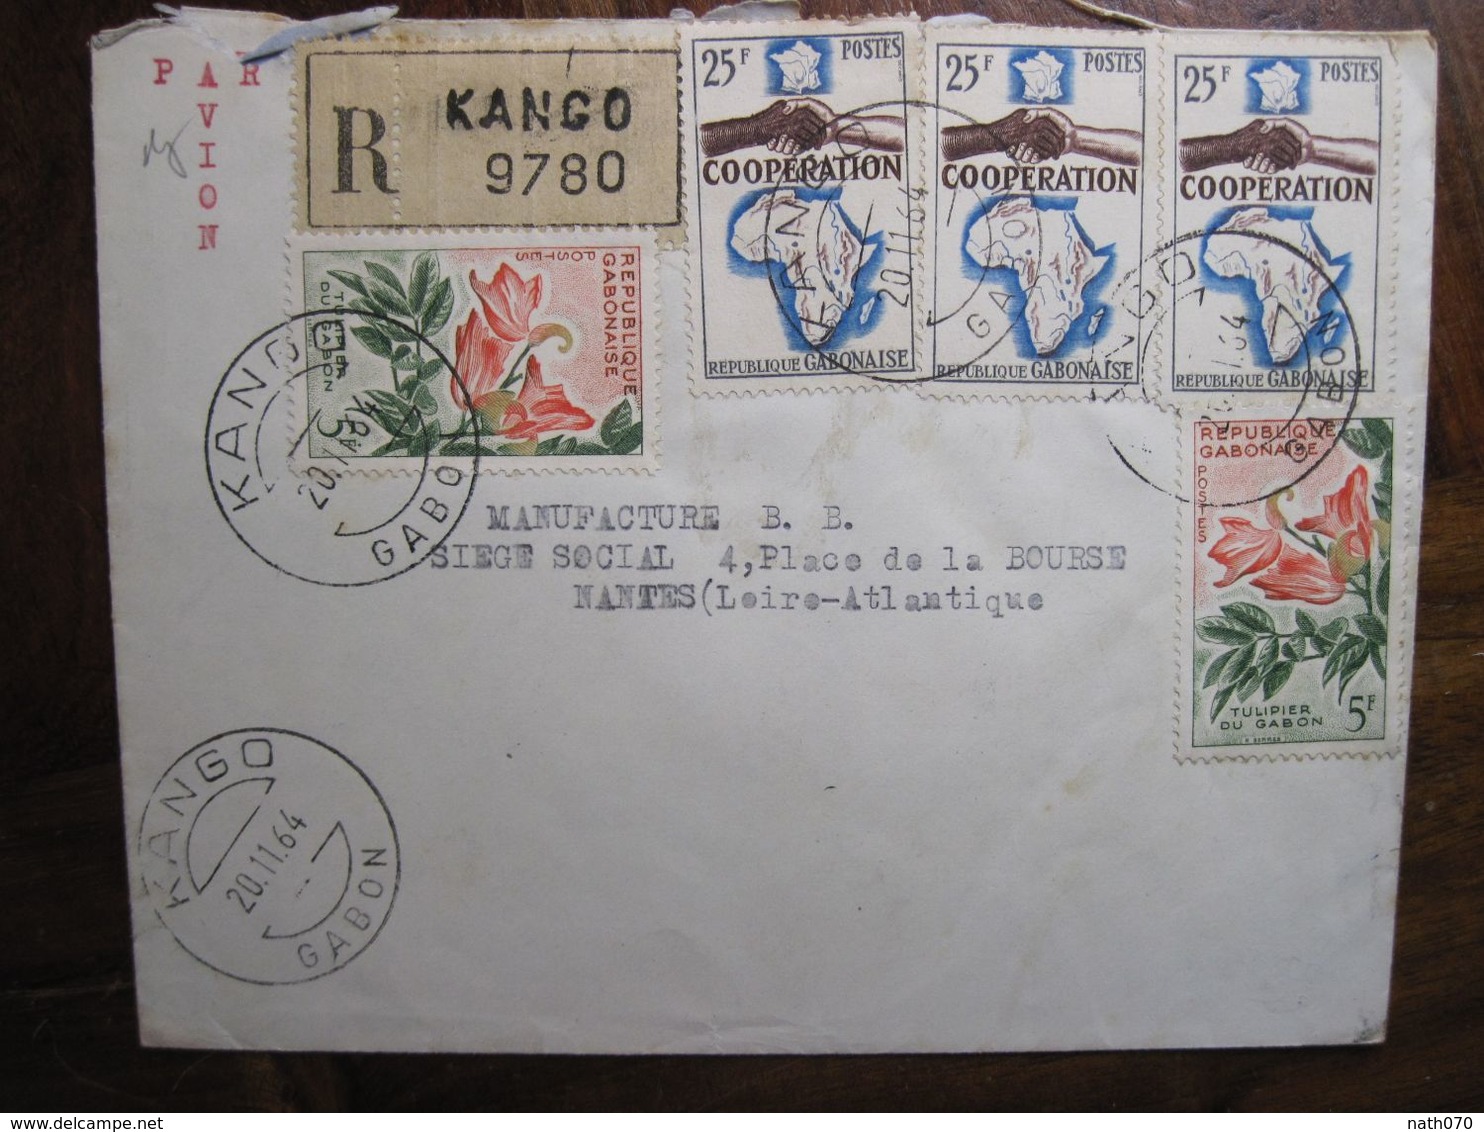 GABON 1964 KANGO Recommandé Reco AEF Par Avion Air Mail Lettre Enveloppe Cover Colonie Airmail - Gabón (1960-...)